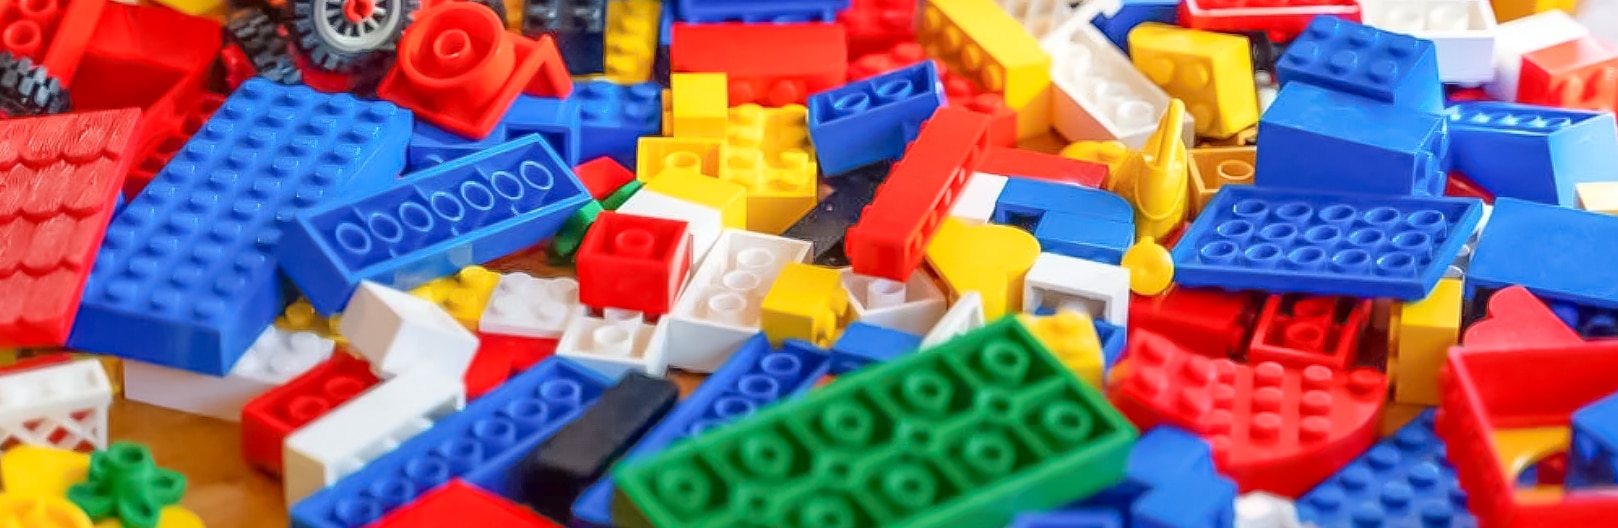 Moralsk defile Alarmerende Read The 9 Best Building Block Toys for Kids